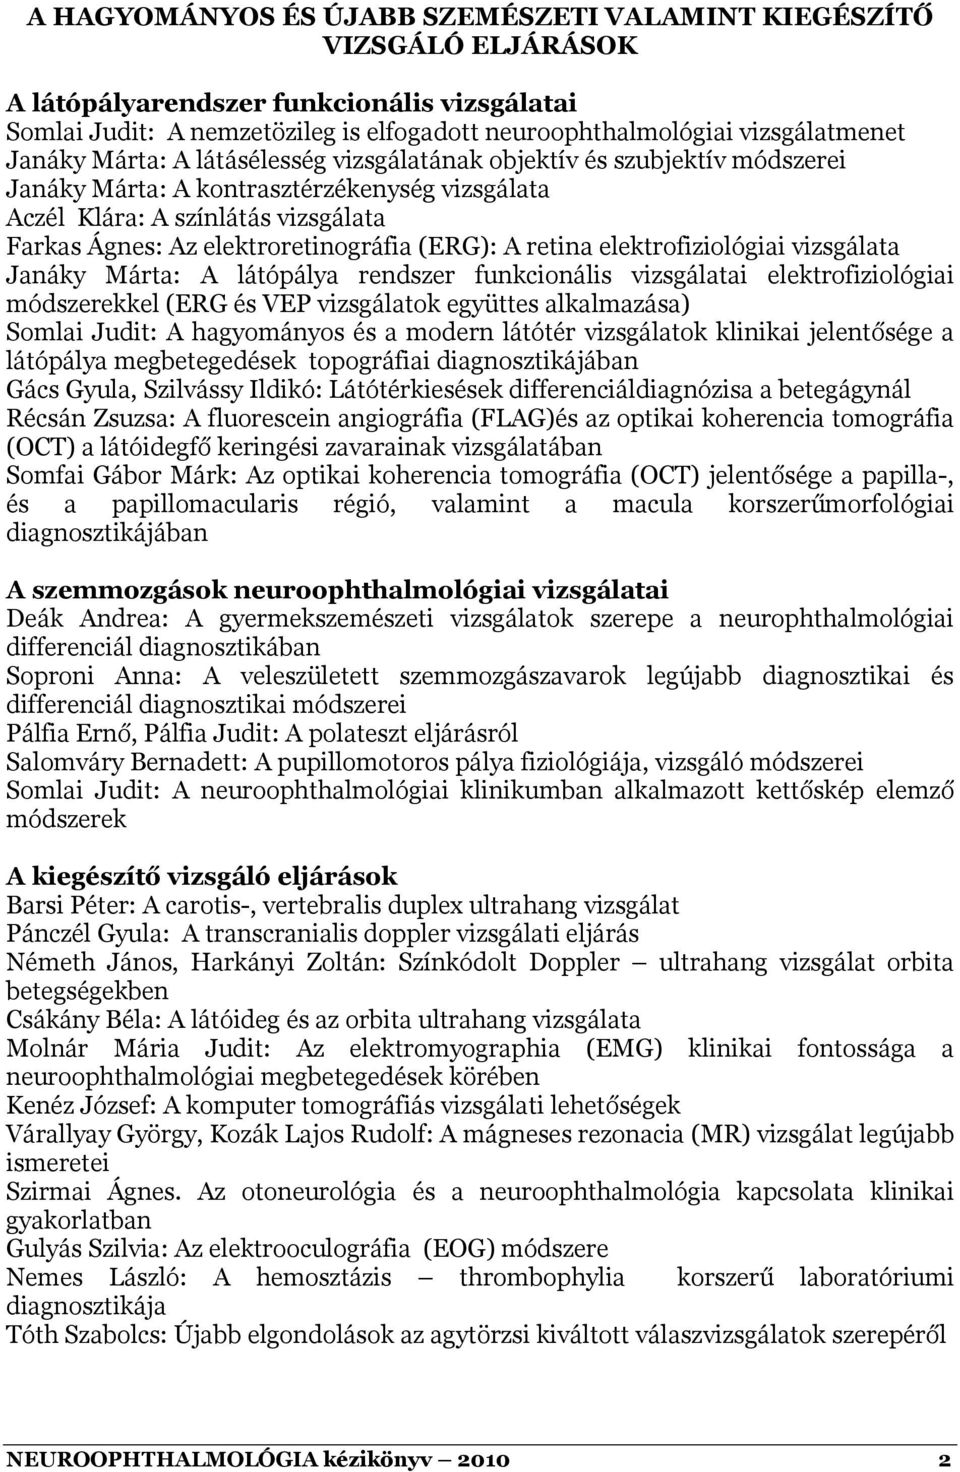 (ERG): A retina elektrofiziológiai vizsgálata Janáky Márta: A látópálya rendszer funkcionális vizsgálatai elektrofiziológiai módszerekkel (ERG és VEP vizsgálatok együttes alkalmazása) Somlai Judit: A